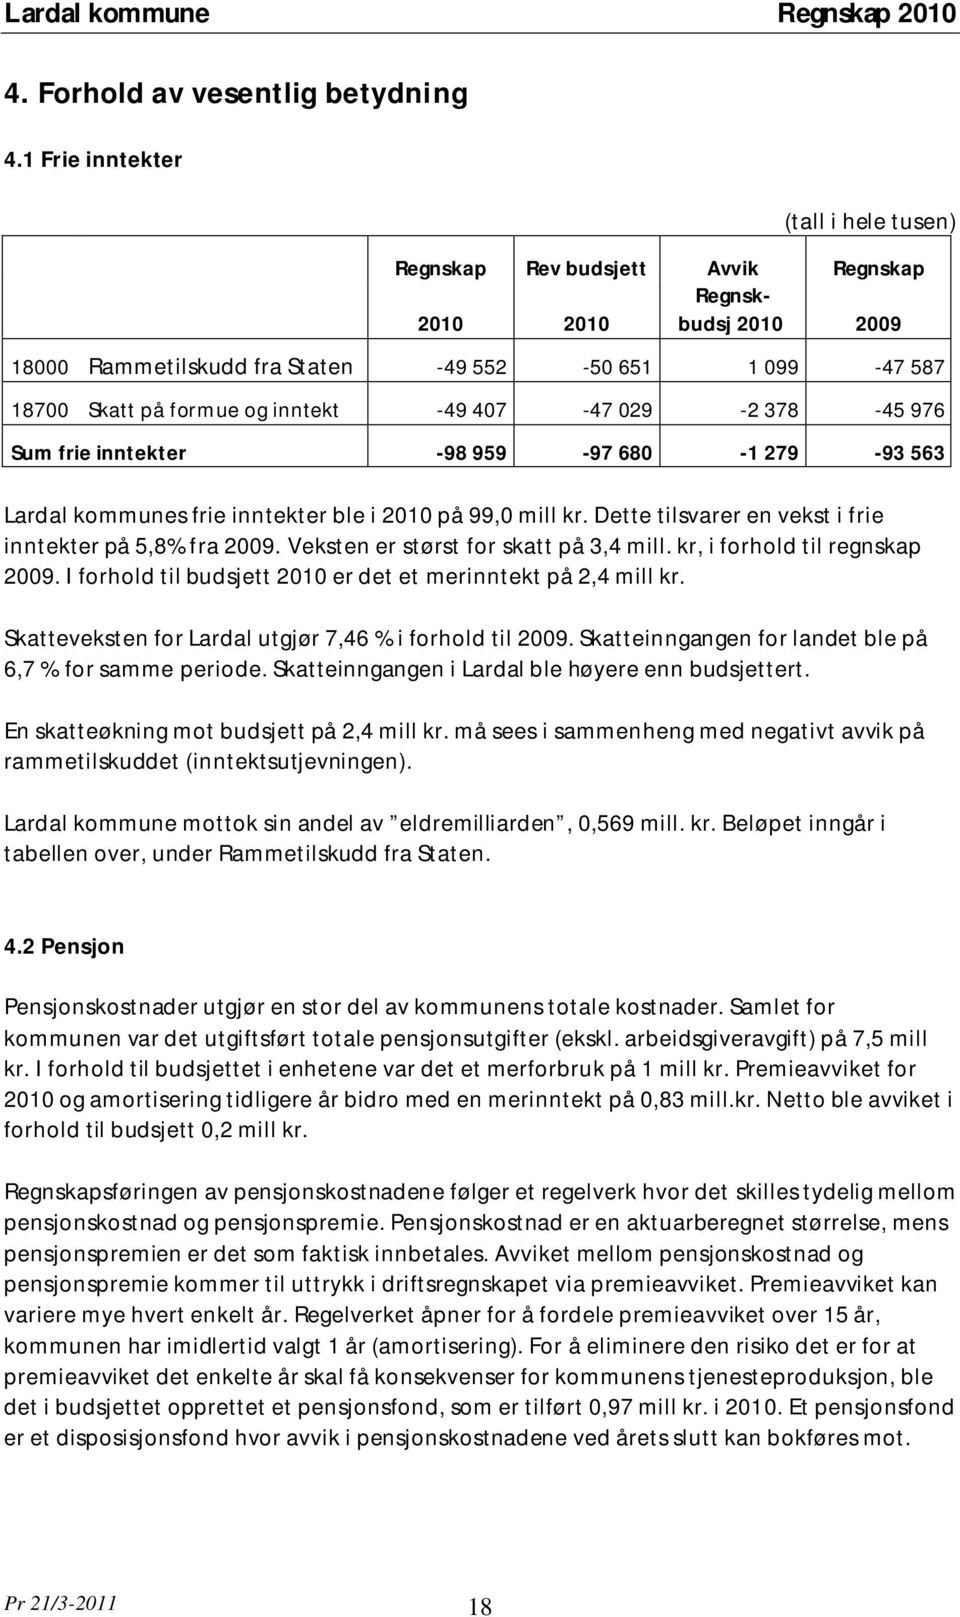 -49 407-47 029-2 378-45 976 Sum frie inntekter -98 959-97 680-1 279-93 563 Lardal kommunes frie inntekter ble i 2010 på 99,0 mill kr. Dette tilsvarer en vekst i frie inntekter på 5,8% fra 2009.